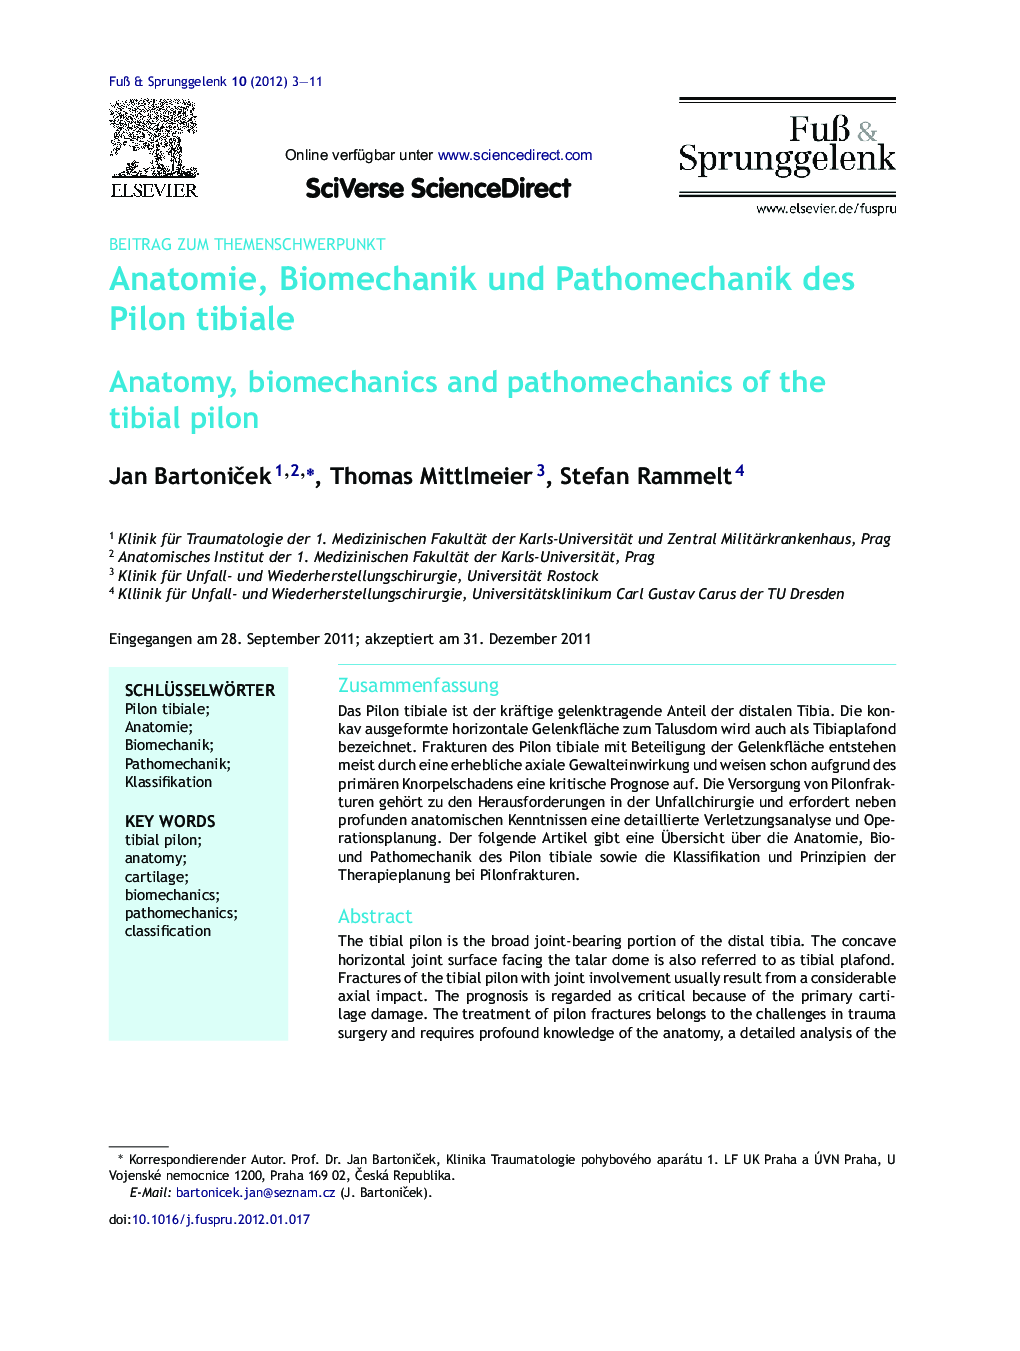 Anatomie, Biomechanik und Pathomechanik des Pilon tibiale